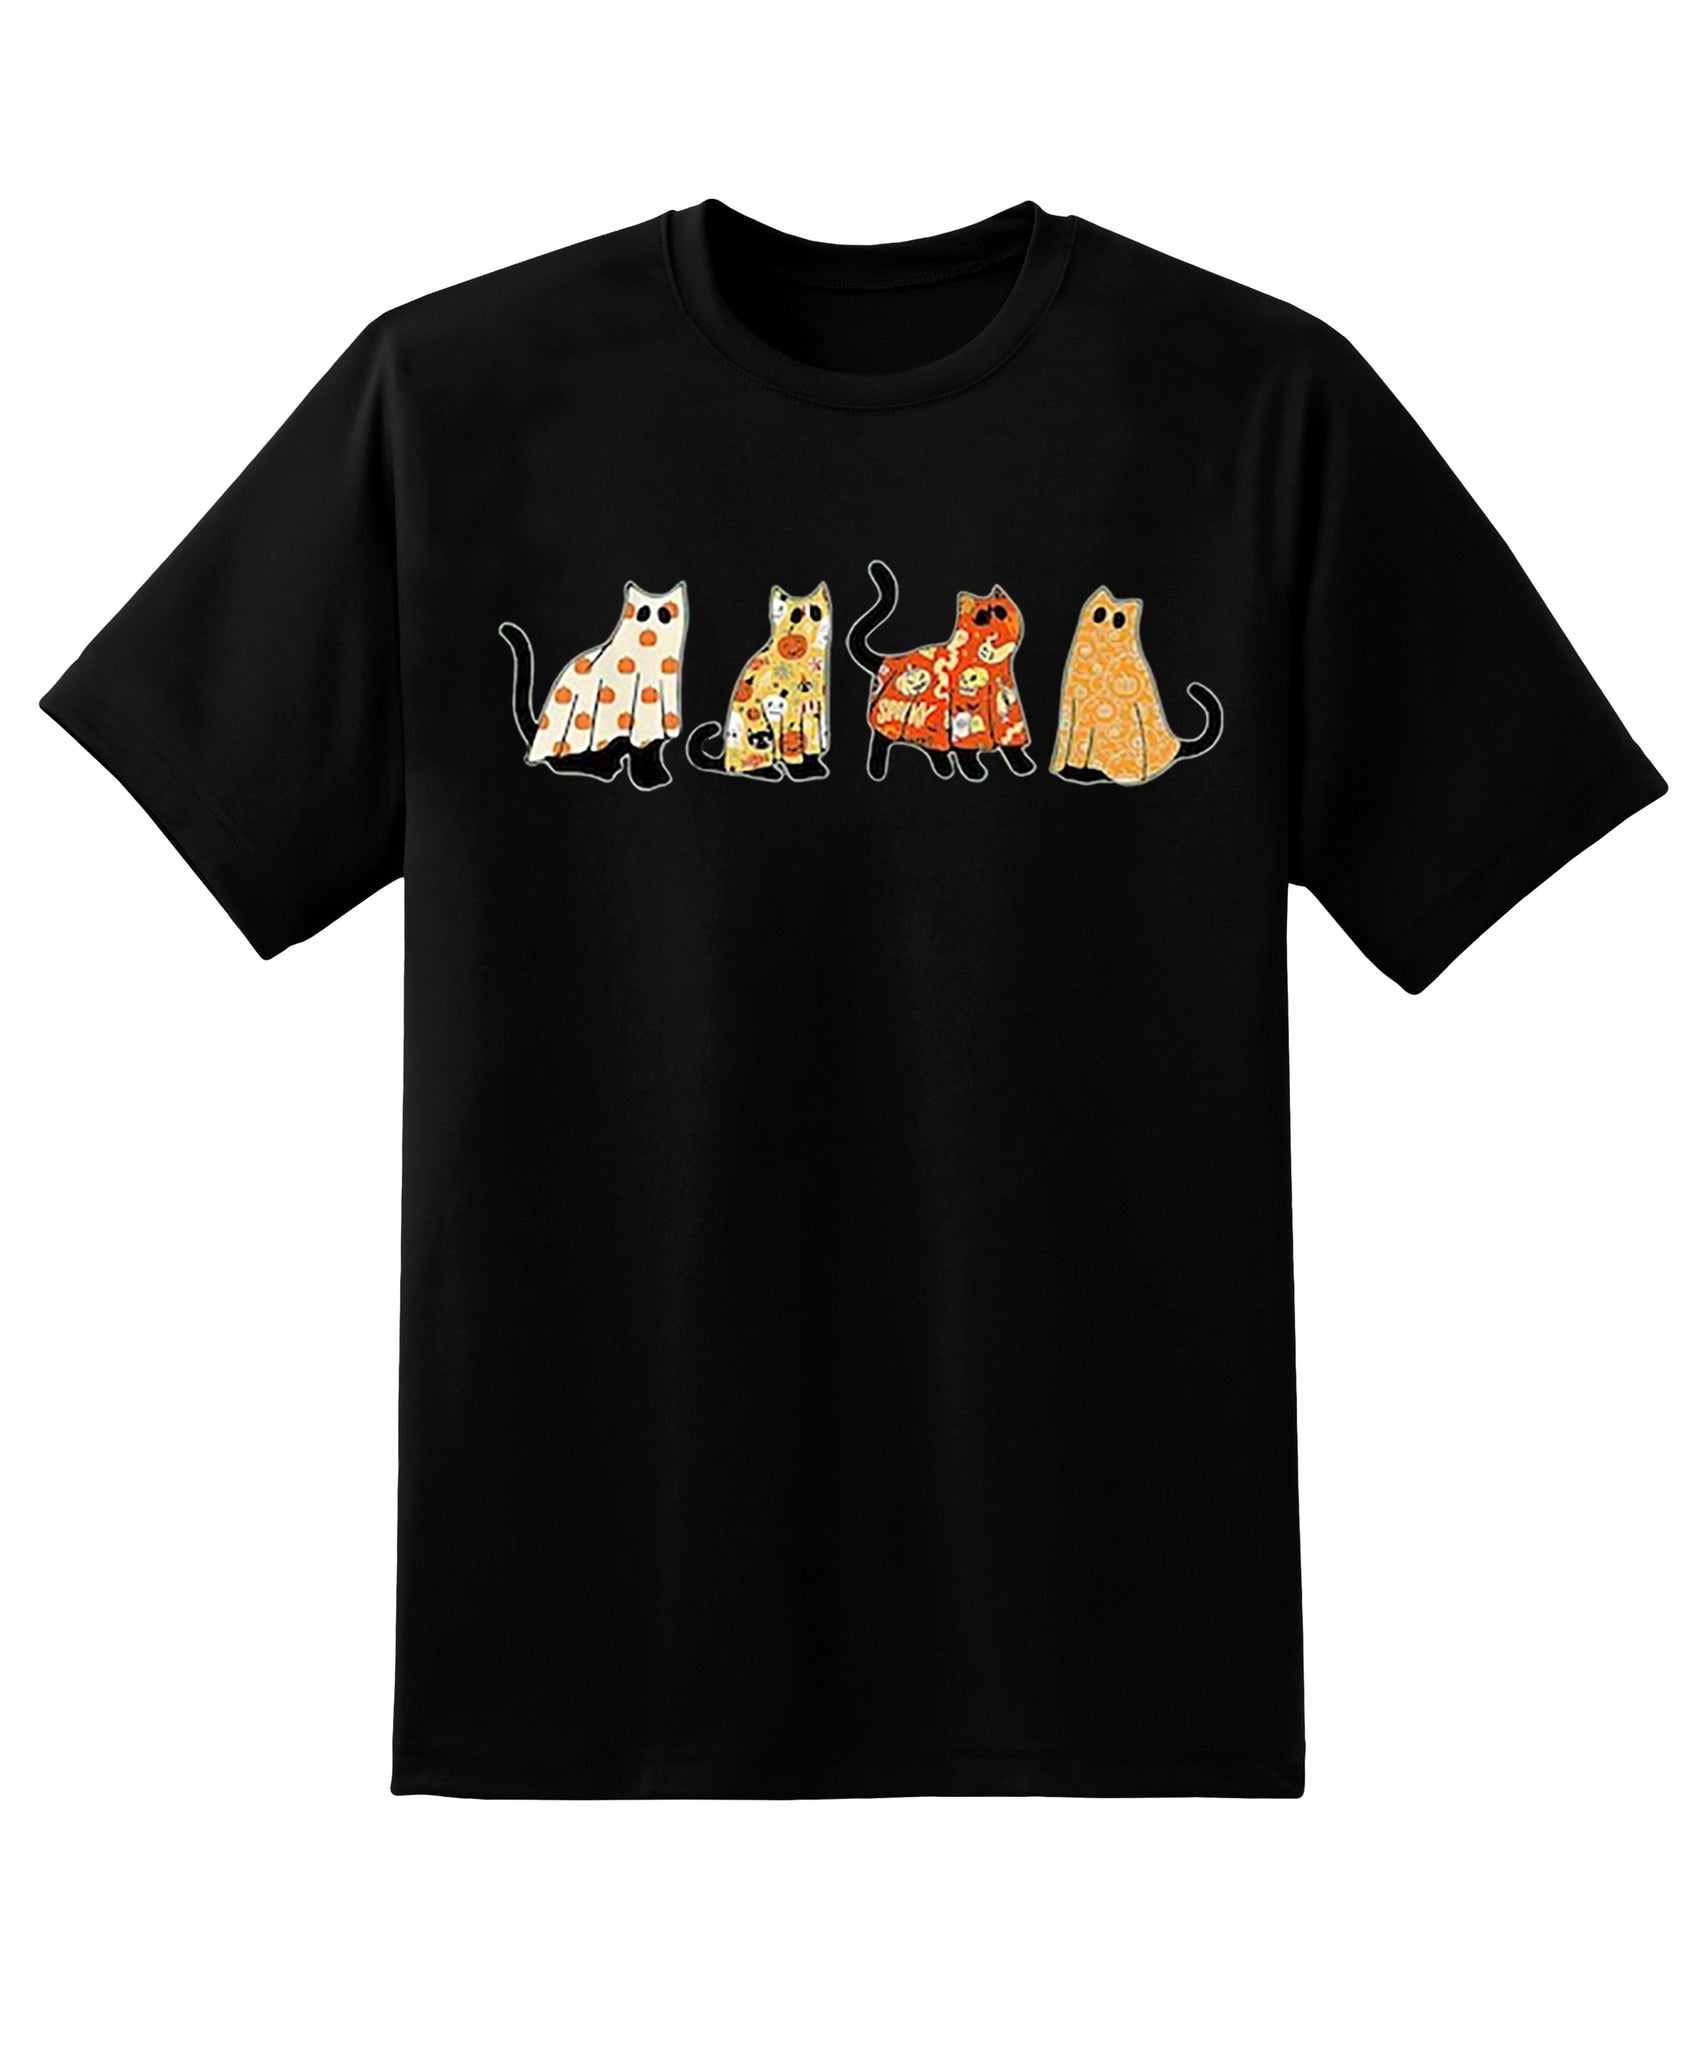 Skitongift Ghost Cats Shirt,Halloween Cat Shirt,Cat Lover Shirt,Funny Halloween Shirt,Halloween Shirt,Cat Shirt,Ghost Shirt